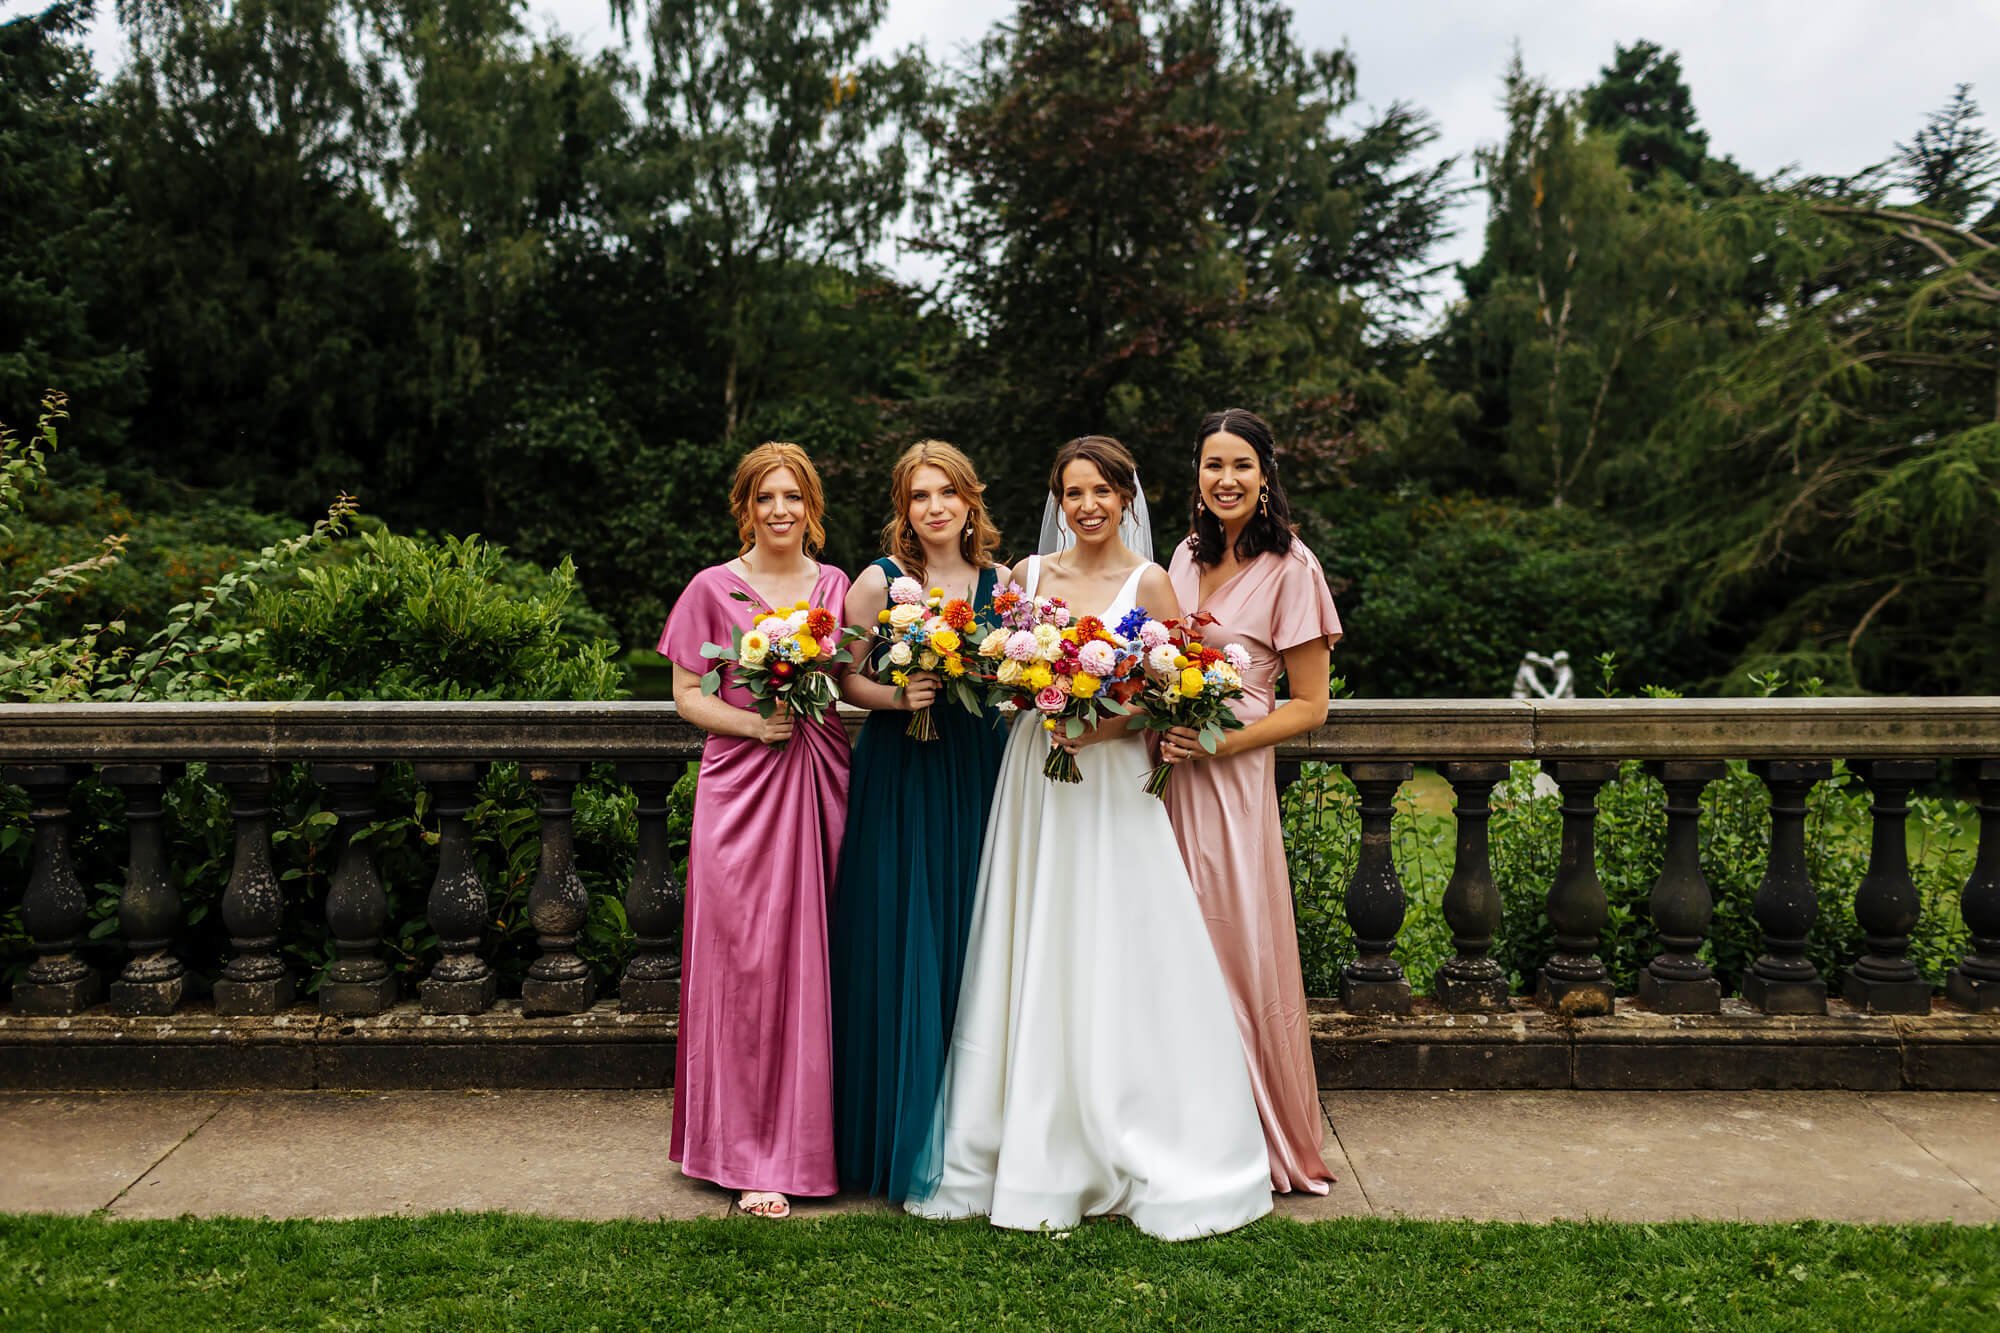 Groups shot of the bridesmaids at a wedding